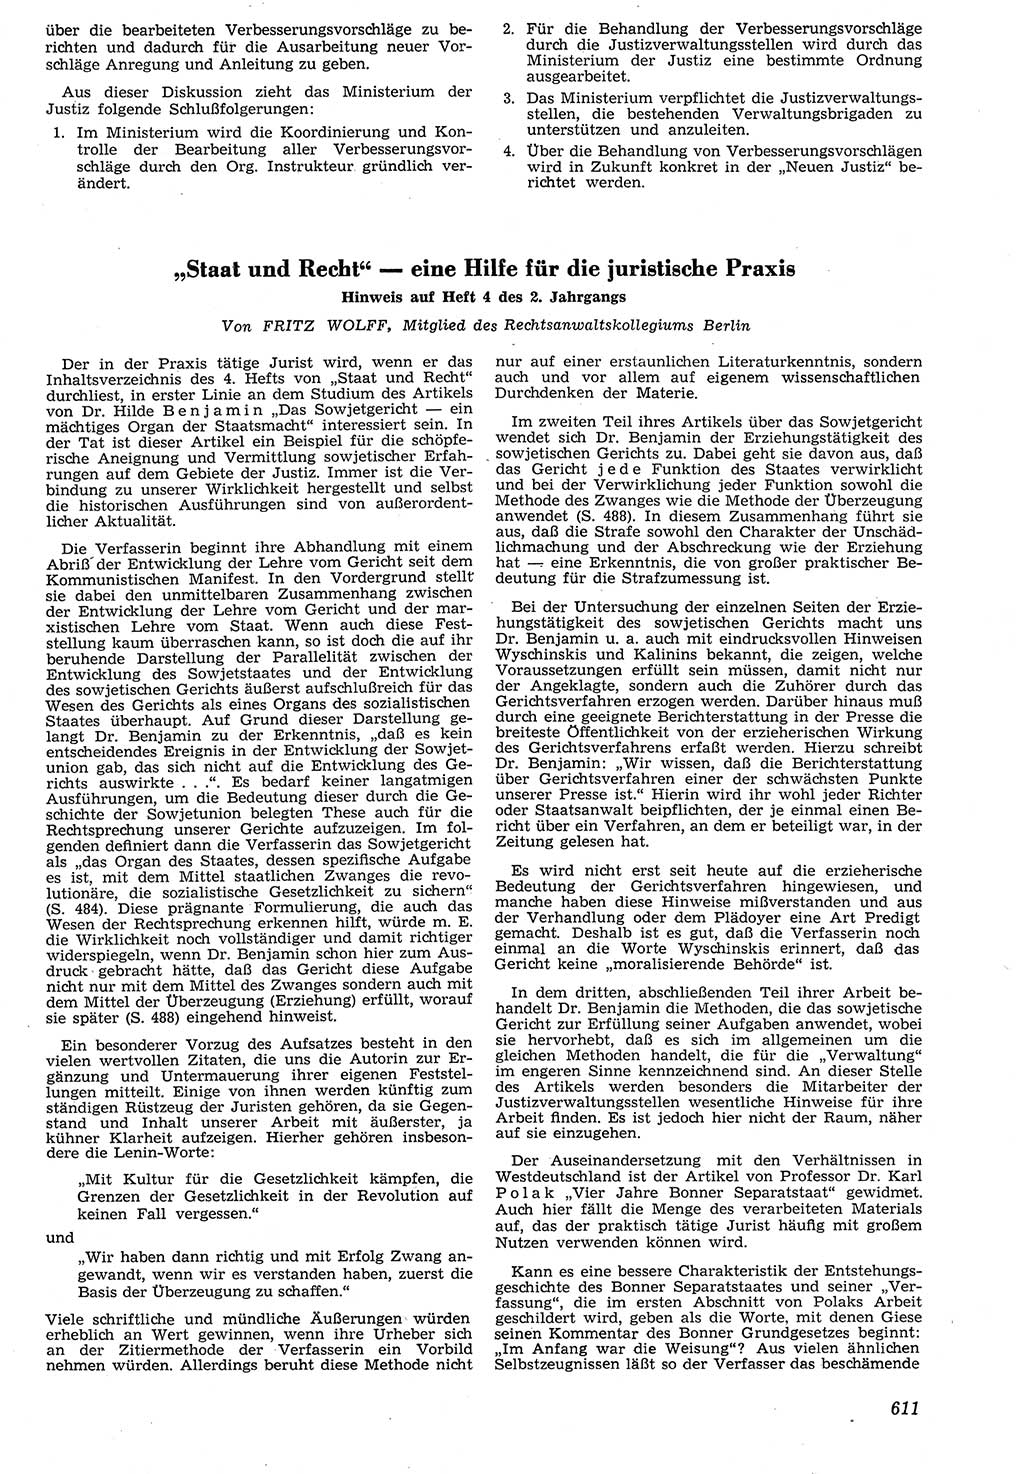 Neue Justiz (NJ), Zeitschrift für Recht und Rechtswissenschaft [Deutsche Demokratische Republik (DDR)], 7. Jahrgang 1953, Seite 611 (NJ DDR 1953, S. 611)